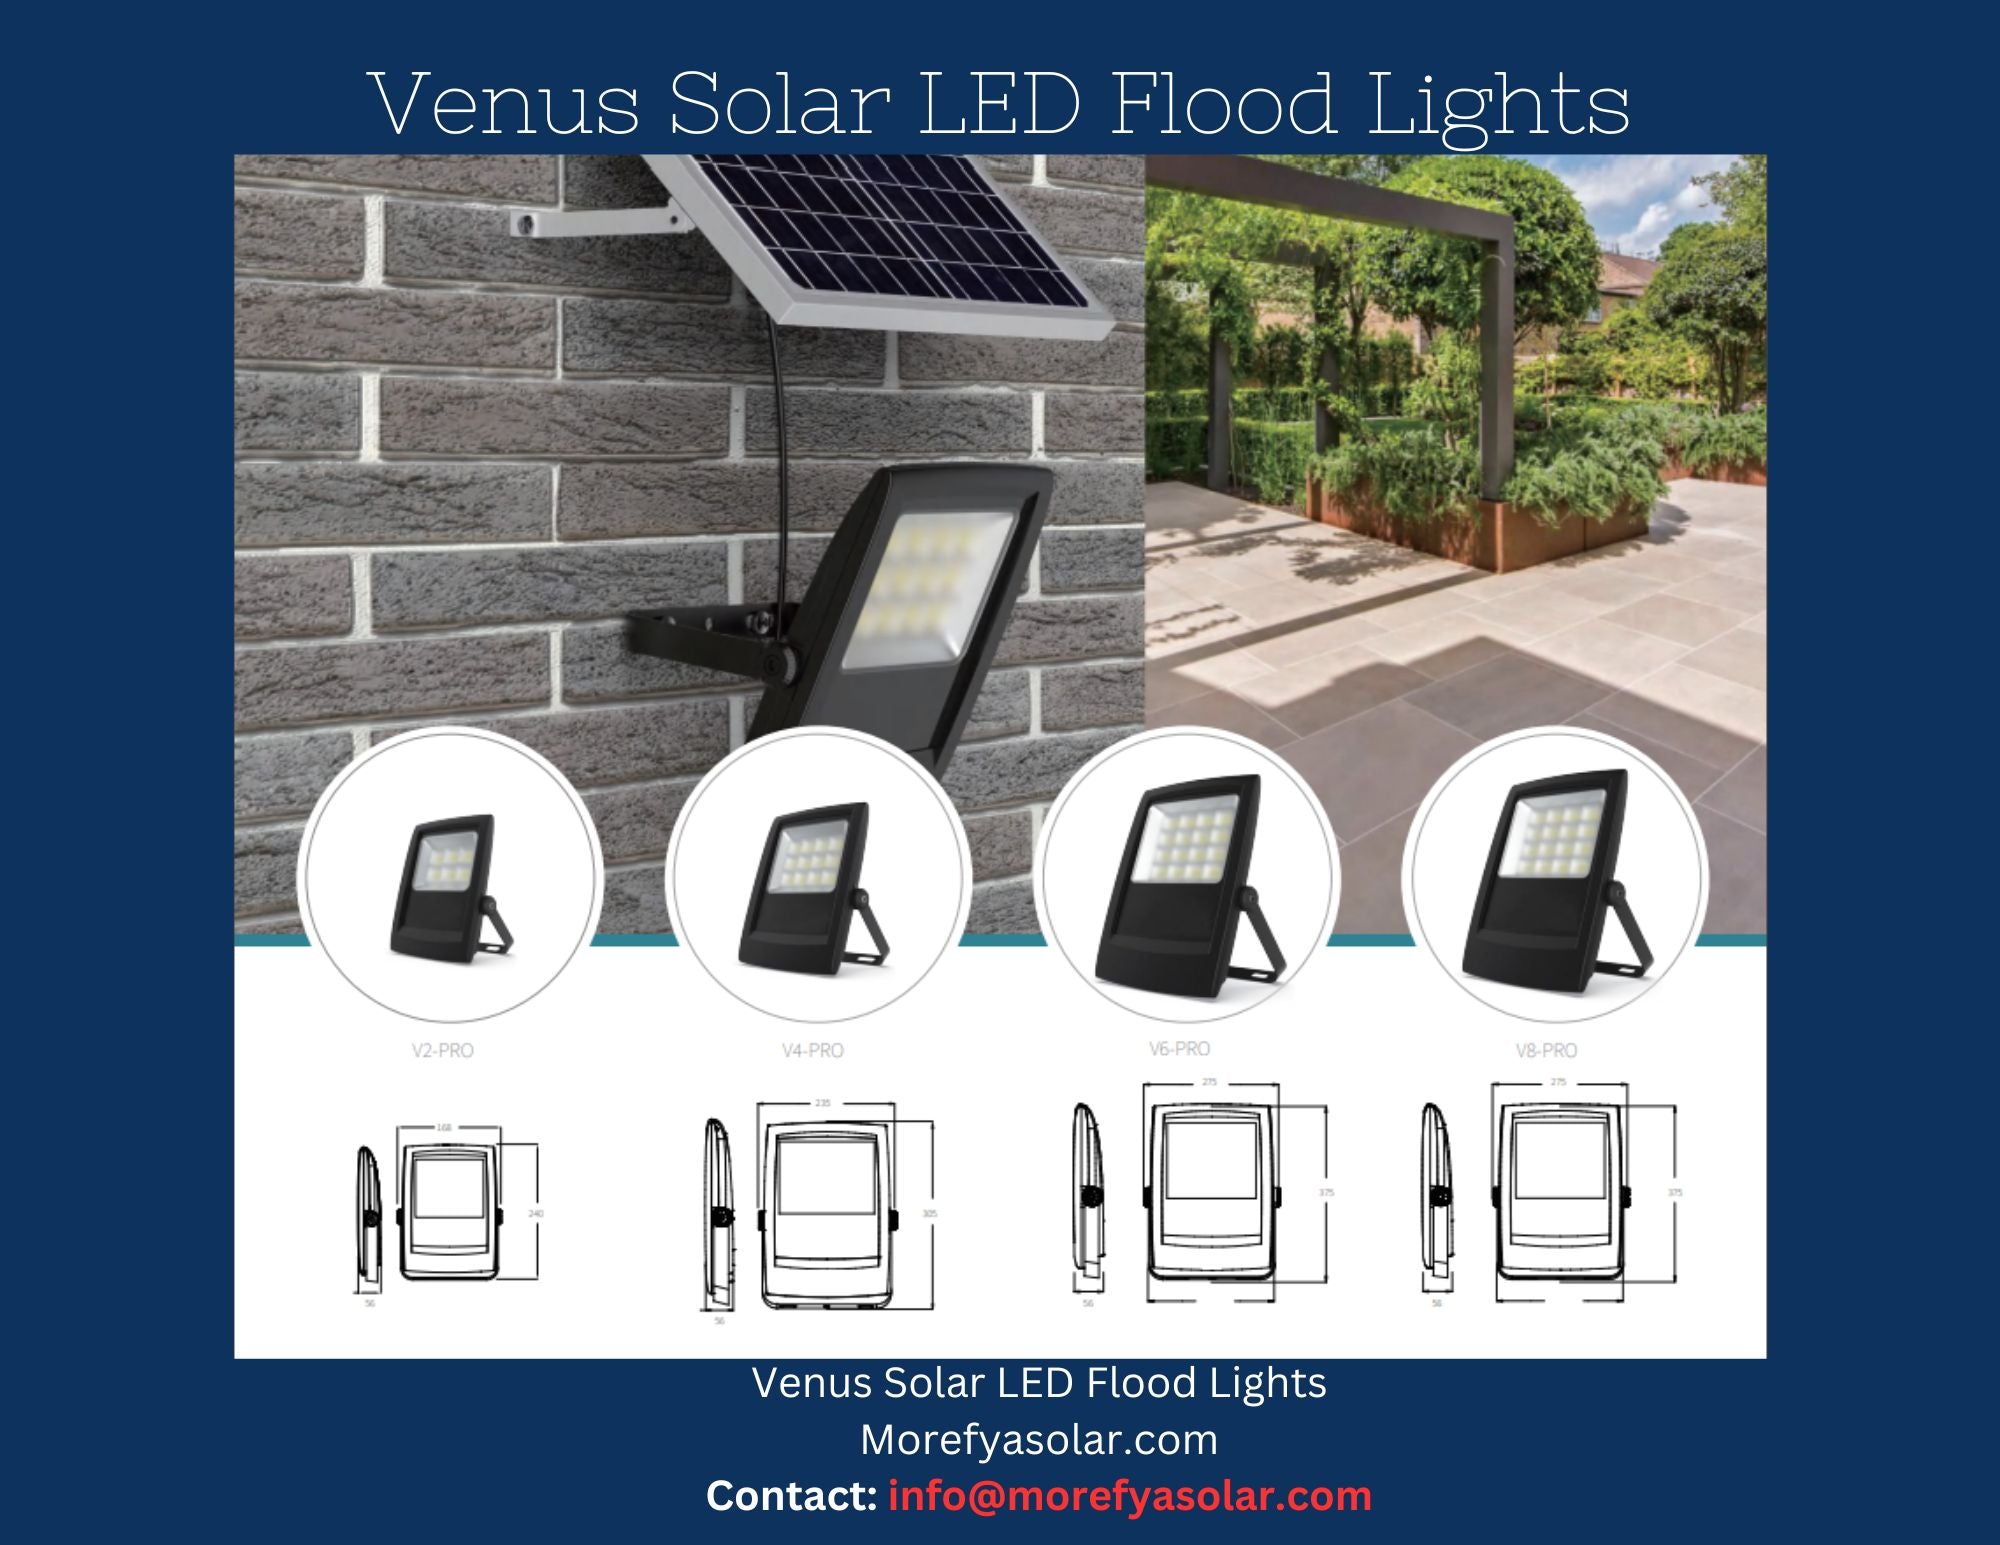 Venus V6 Pro Solar LED Flood Light